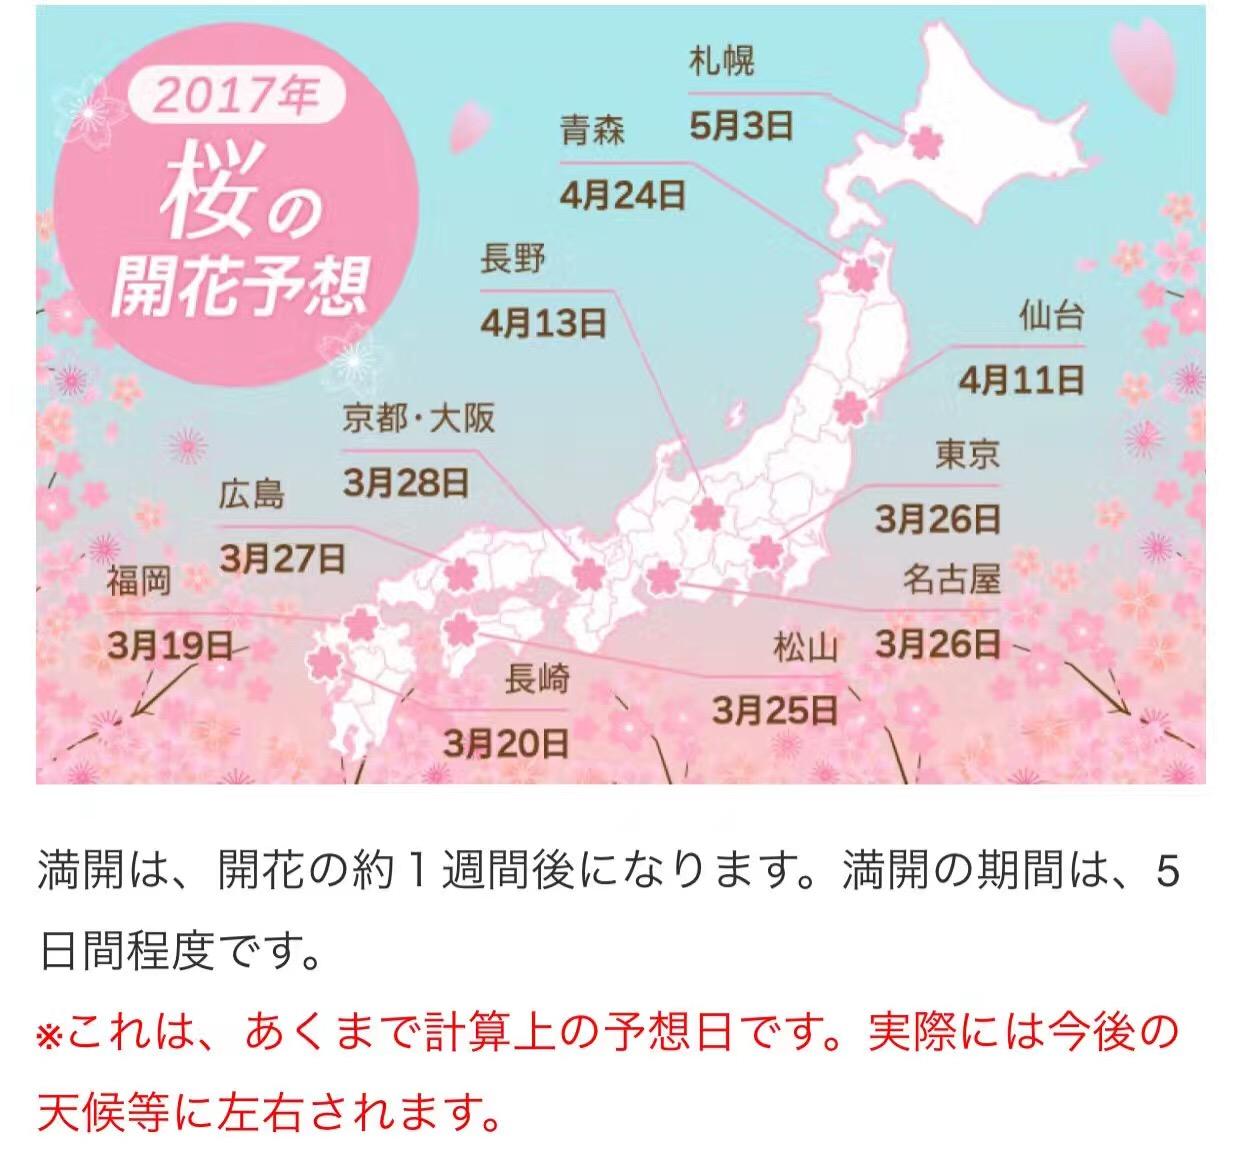 2017年的樱前线已经发布:去赏樱花,首先要选好时间,日本每年年初都会